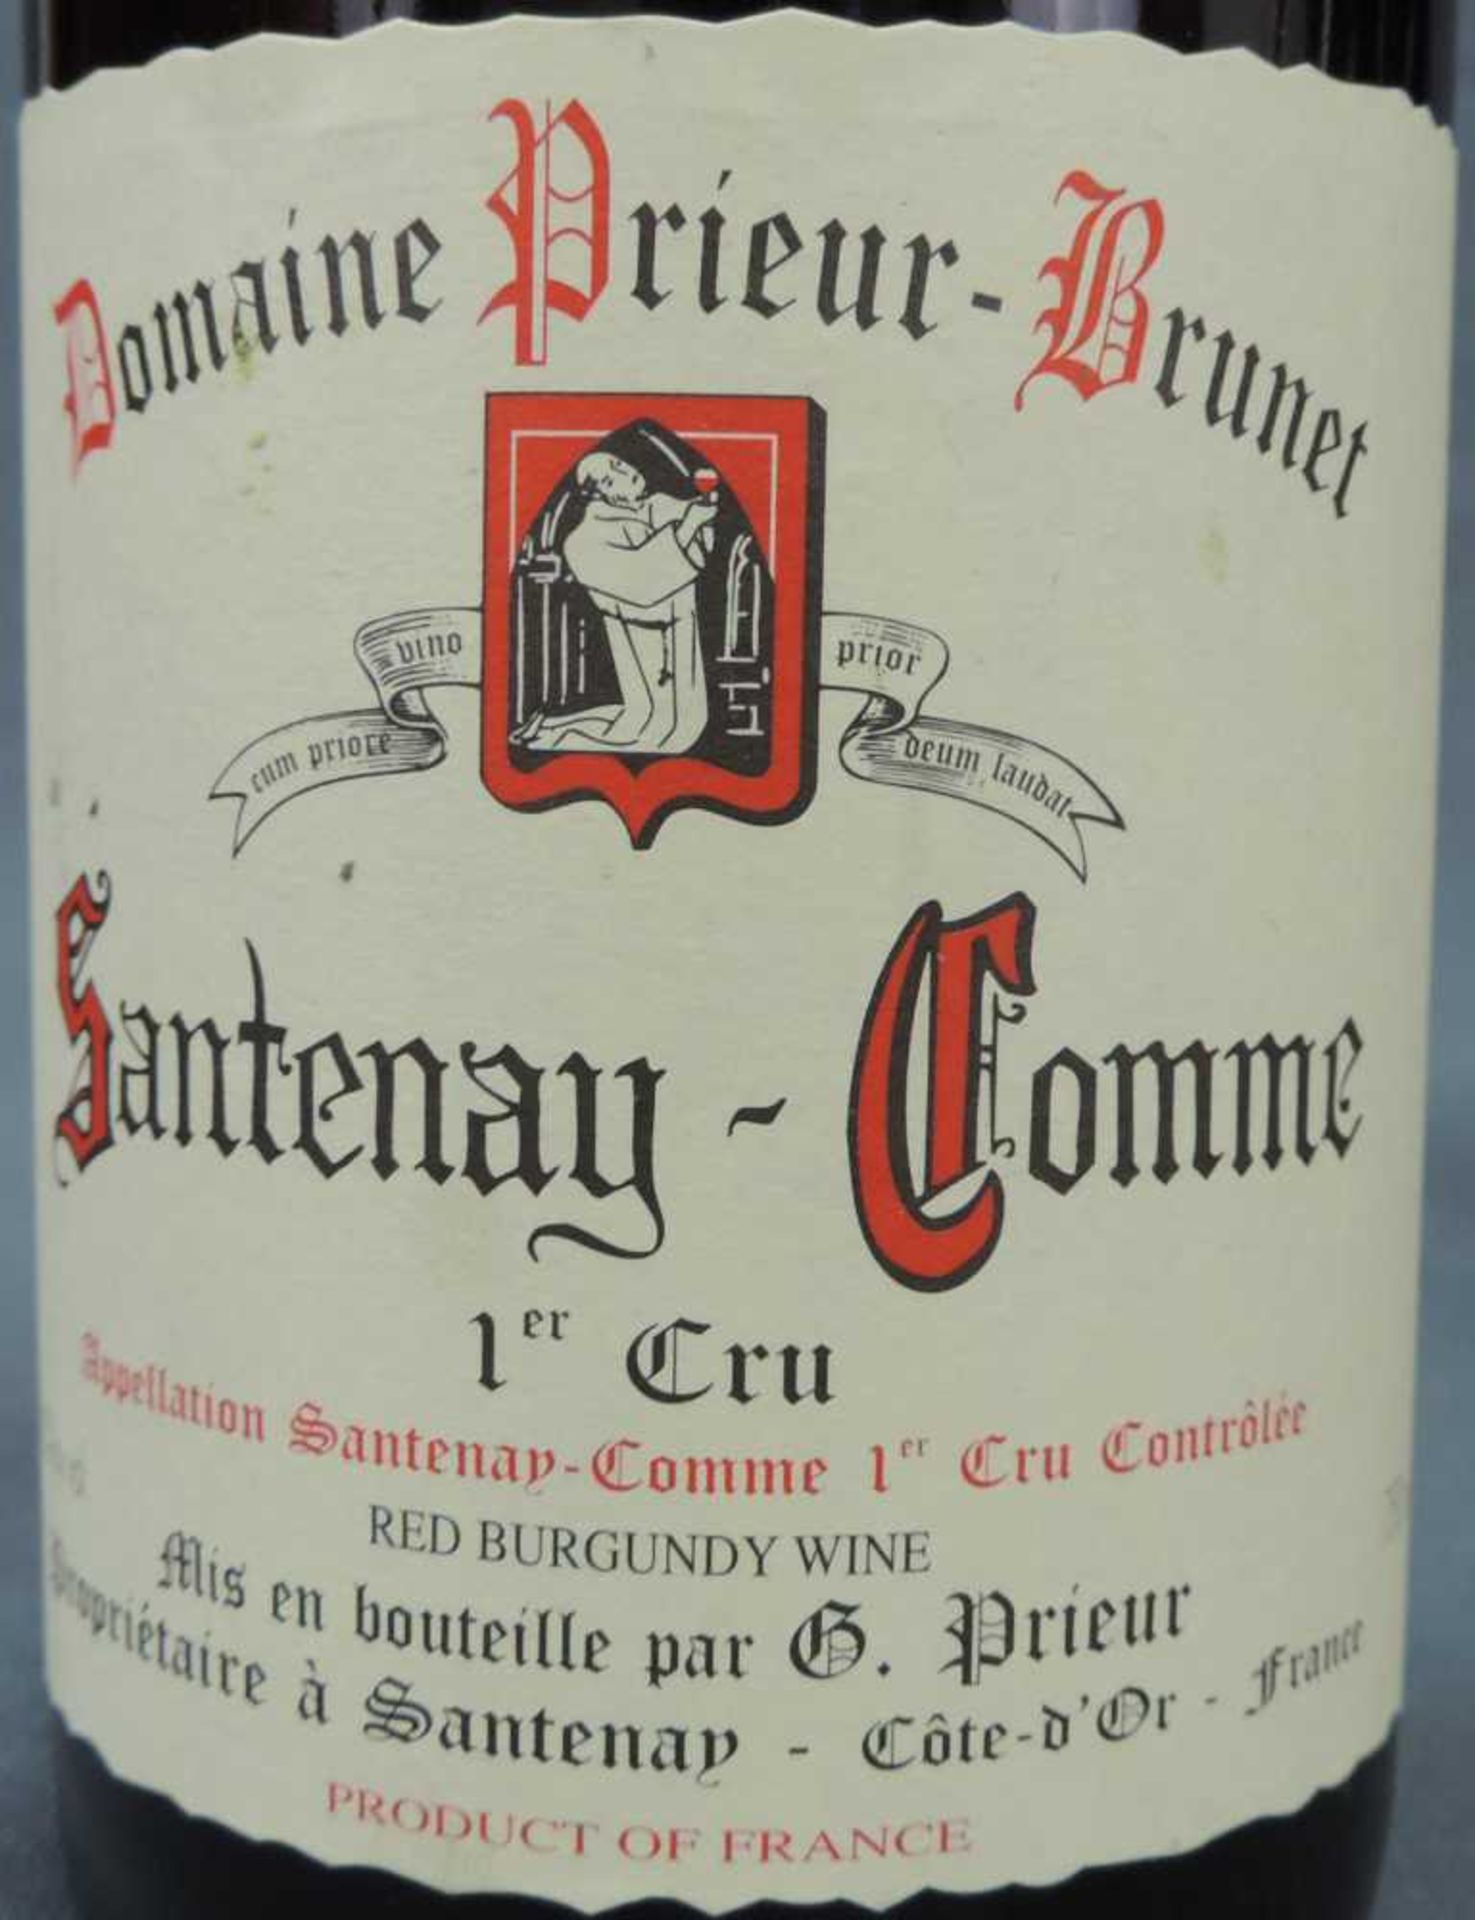 2000 Domaine Prieur - Brunet, Satenay Comme Premier Cru, France. 8 Flaschen, 750 ml, Alc., 13,5% - Image 3 of 6